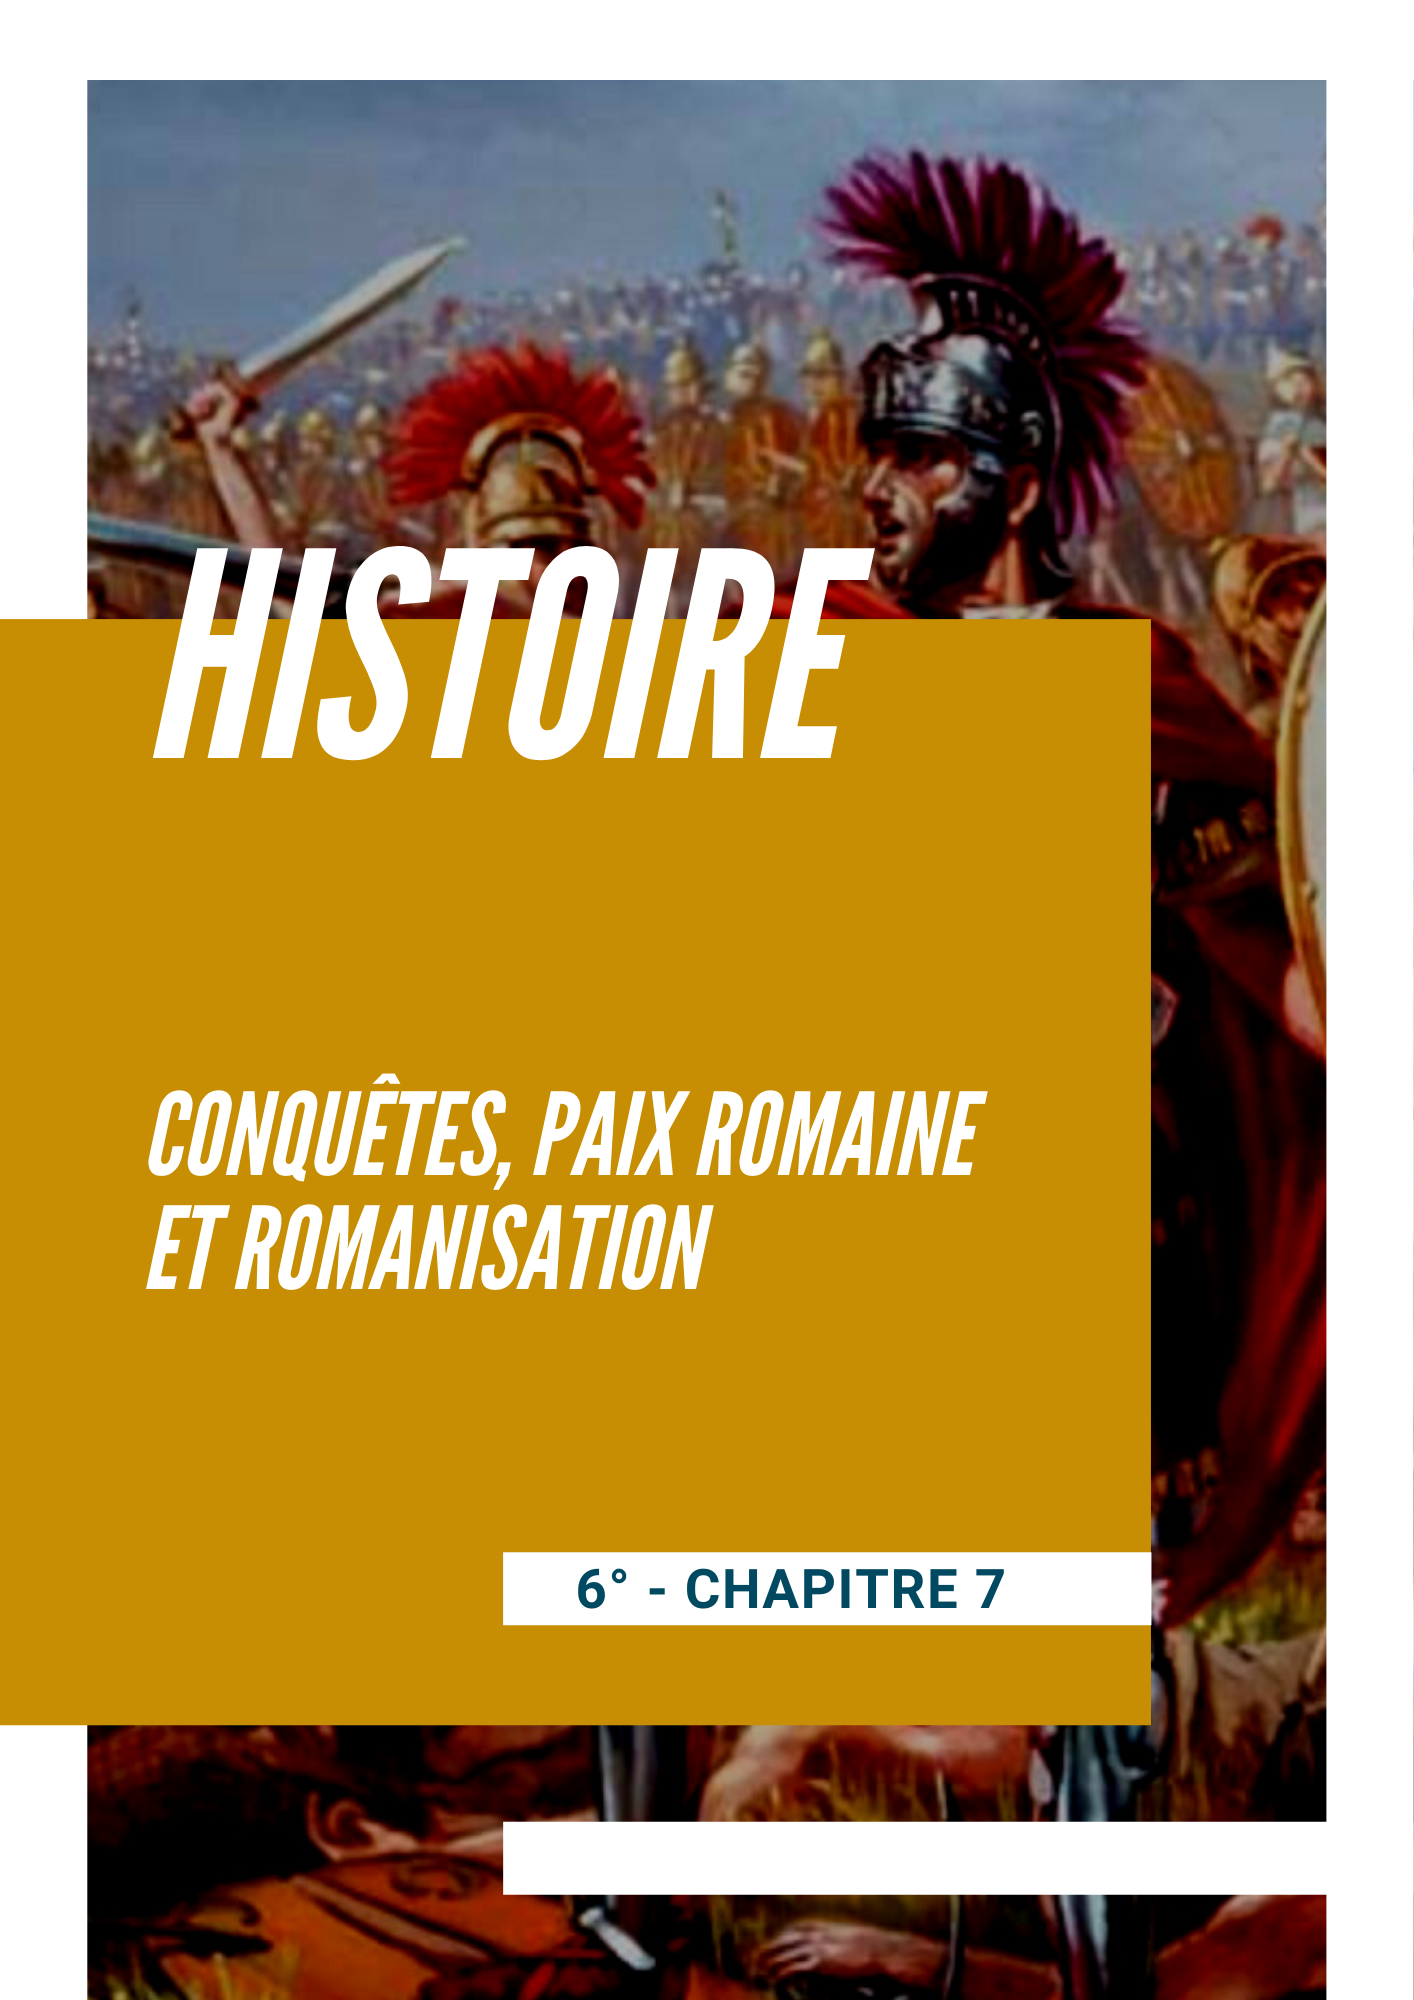 Chapitre 7 - Conquêtes, paix romaine et romanisation